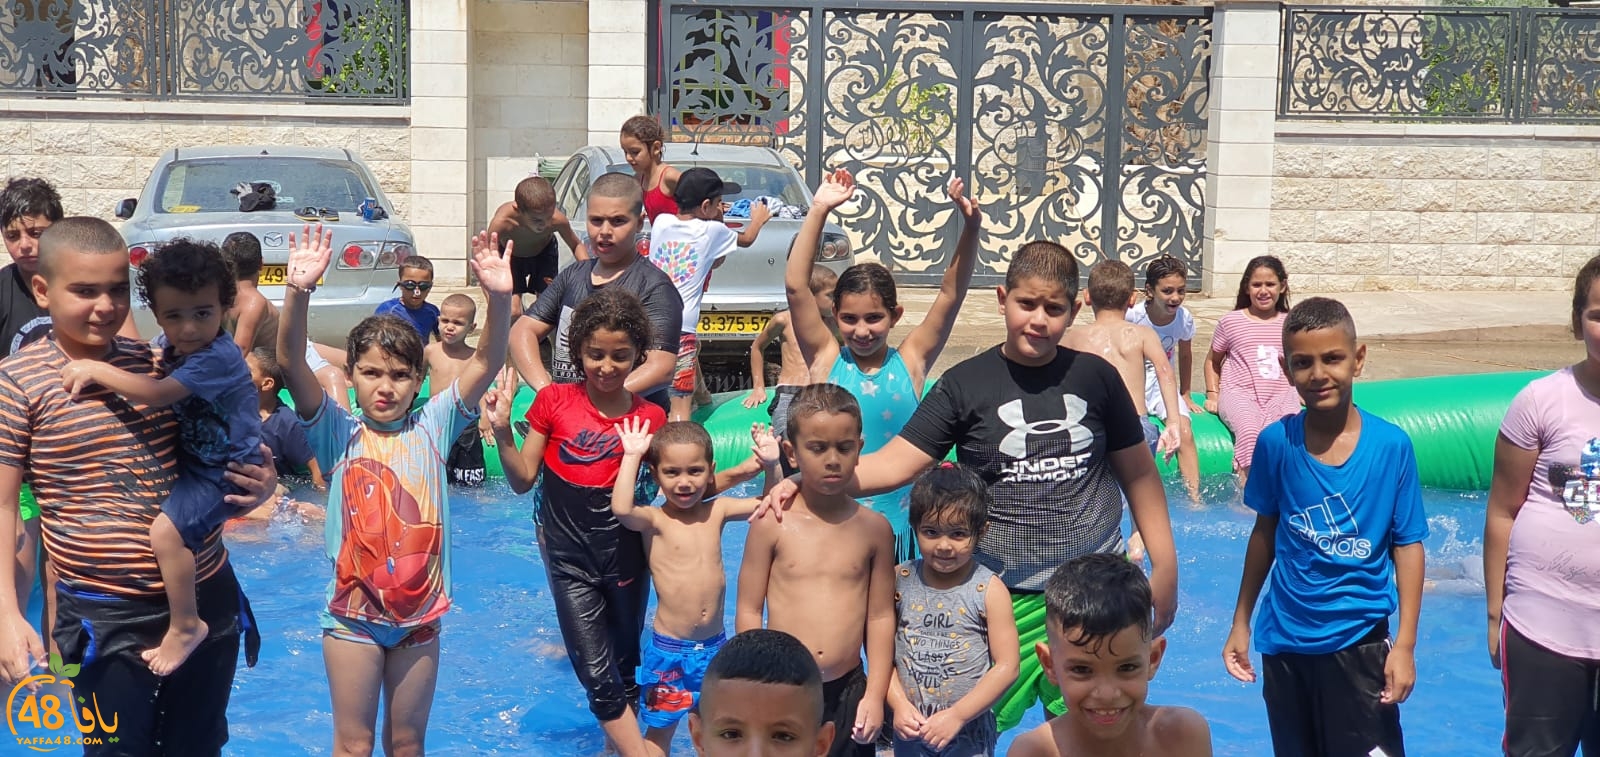 بالفيديو: ألعاب مائية للأطفال في ساحة مسجد النور باللد بمناسبة رأس السنة الهجرية